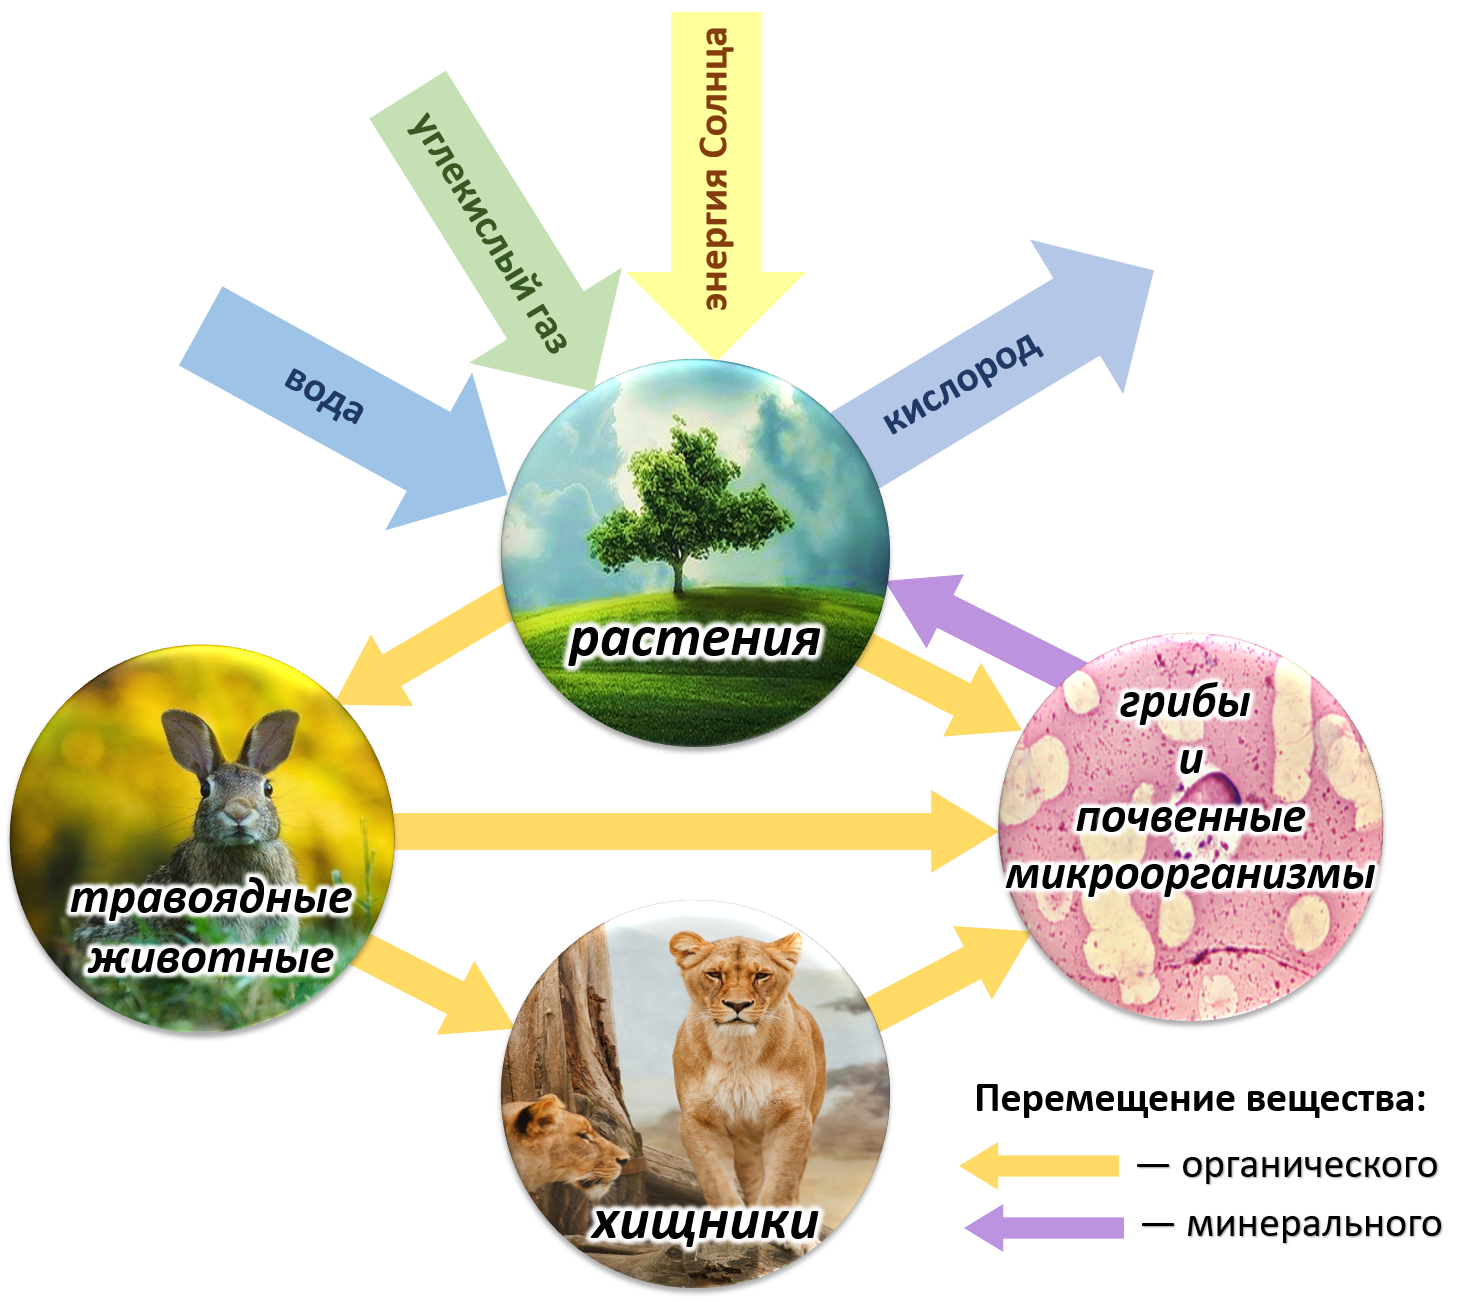 Растения в биосфере является. Биотический круговорот веществ в биосфере. Круговорот веществ и энергии в биосфере схема. Круговорот веществ в природе Биосфера. Схема биологического круговорота в природе.